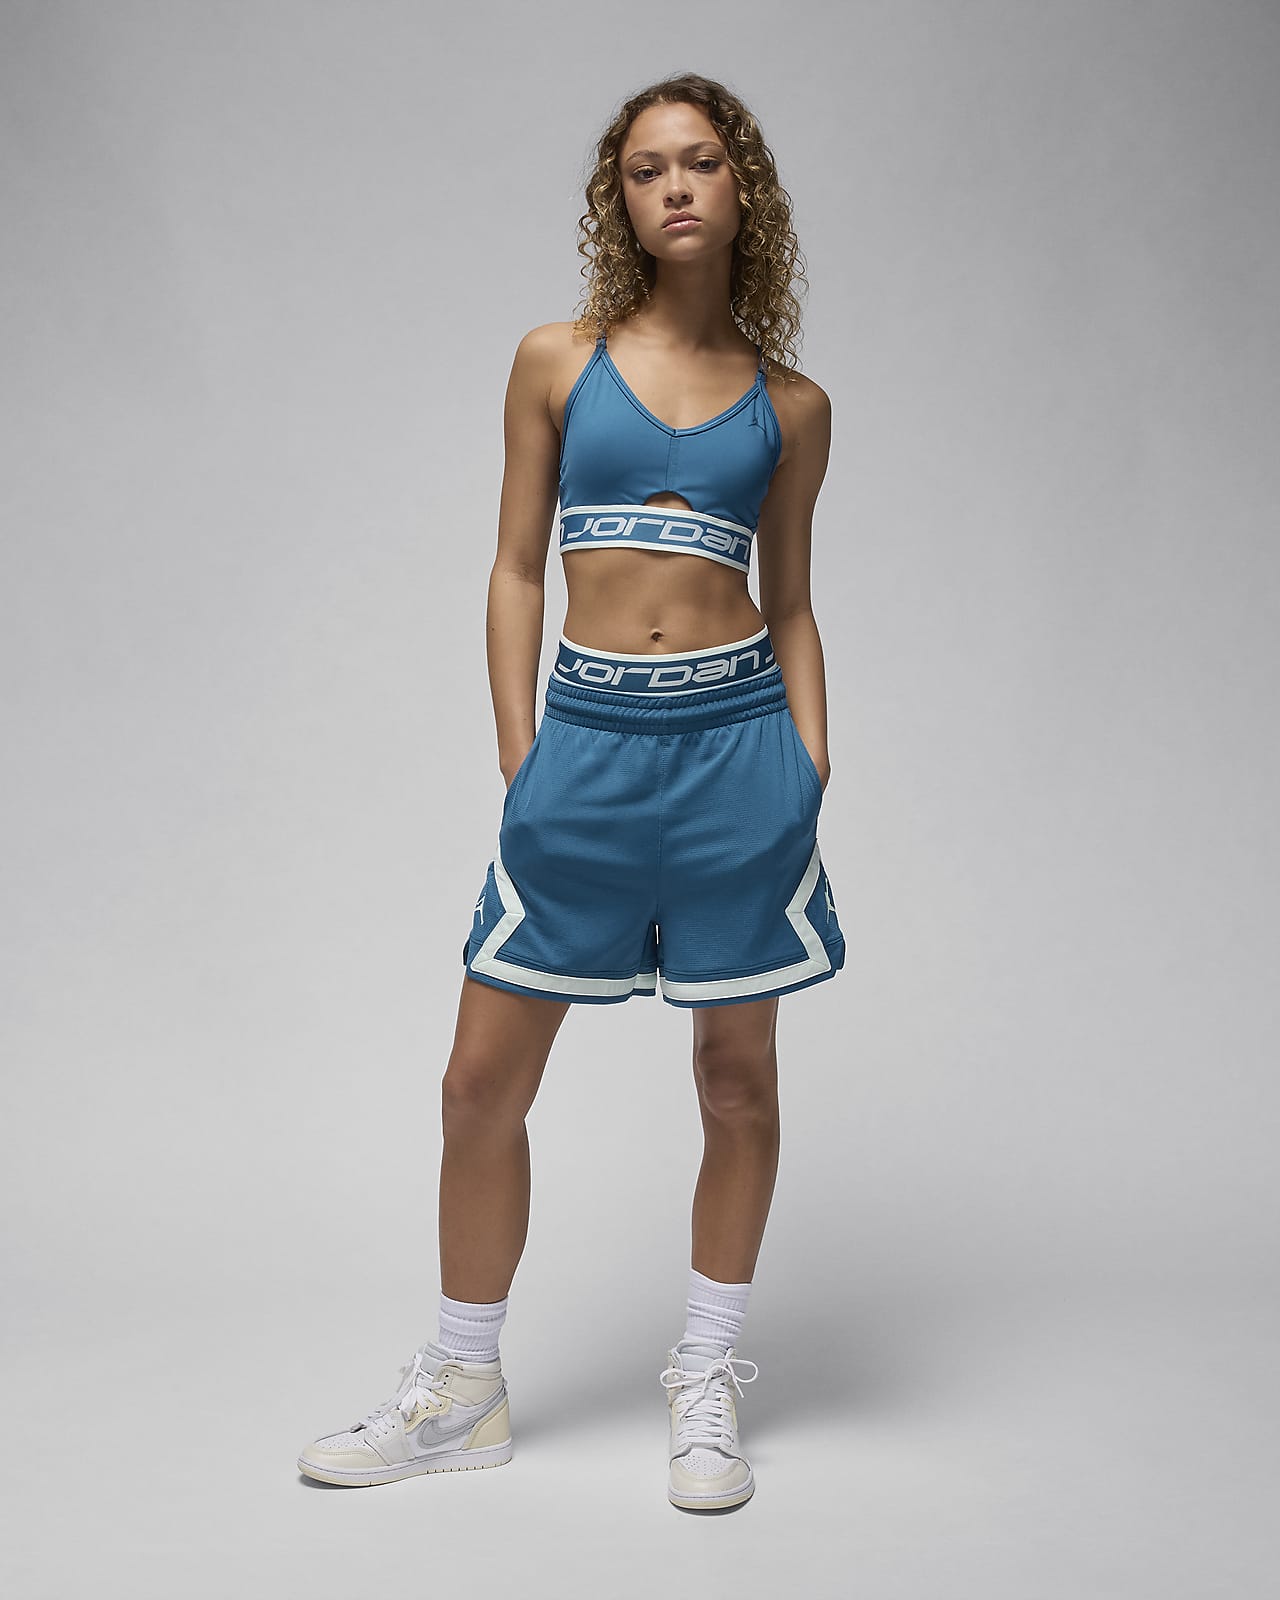 Nike Sisterhood Indy bra top in blue